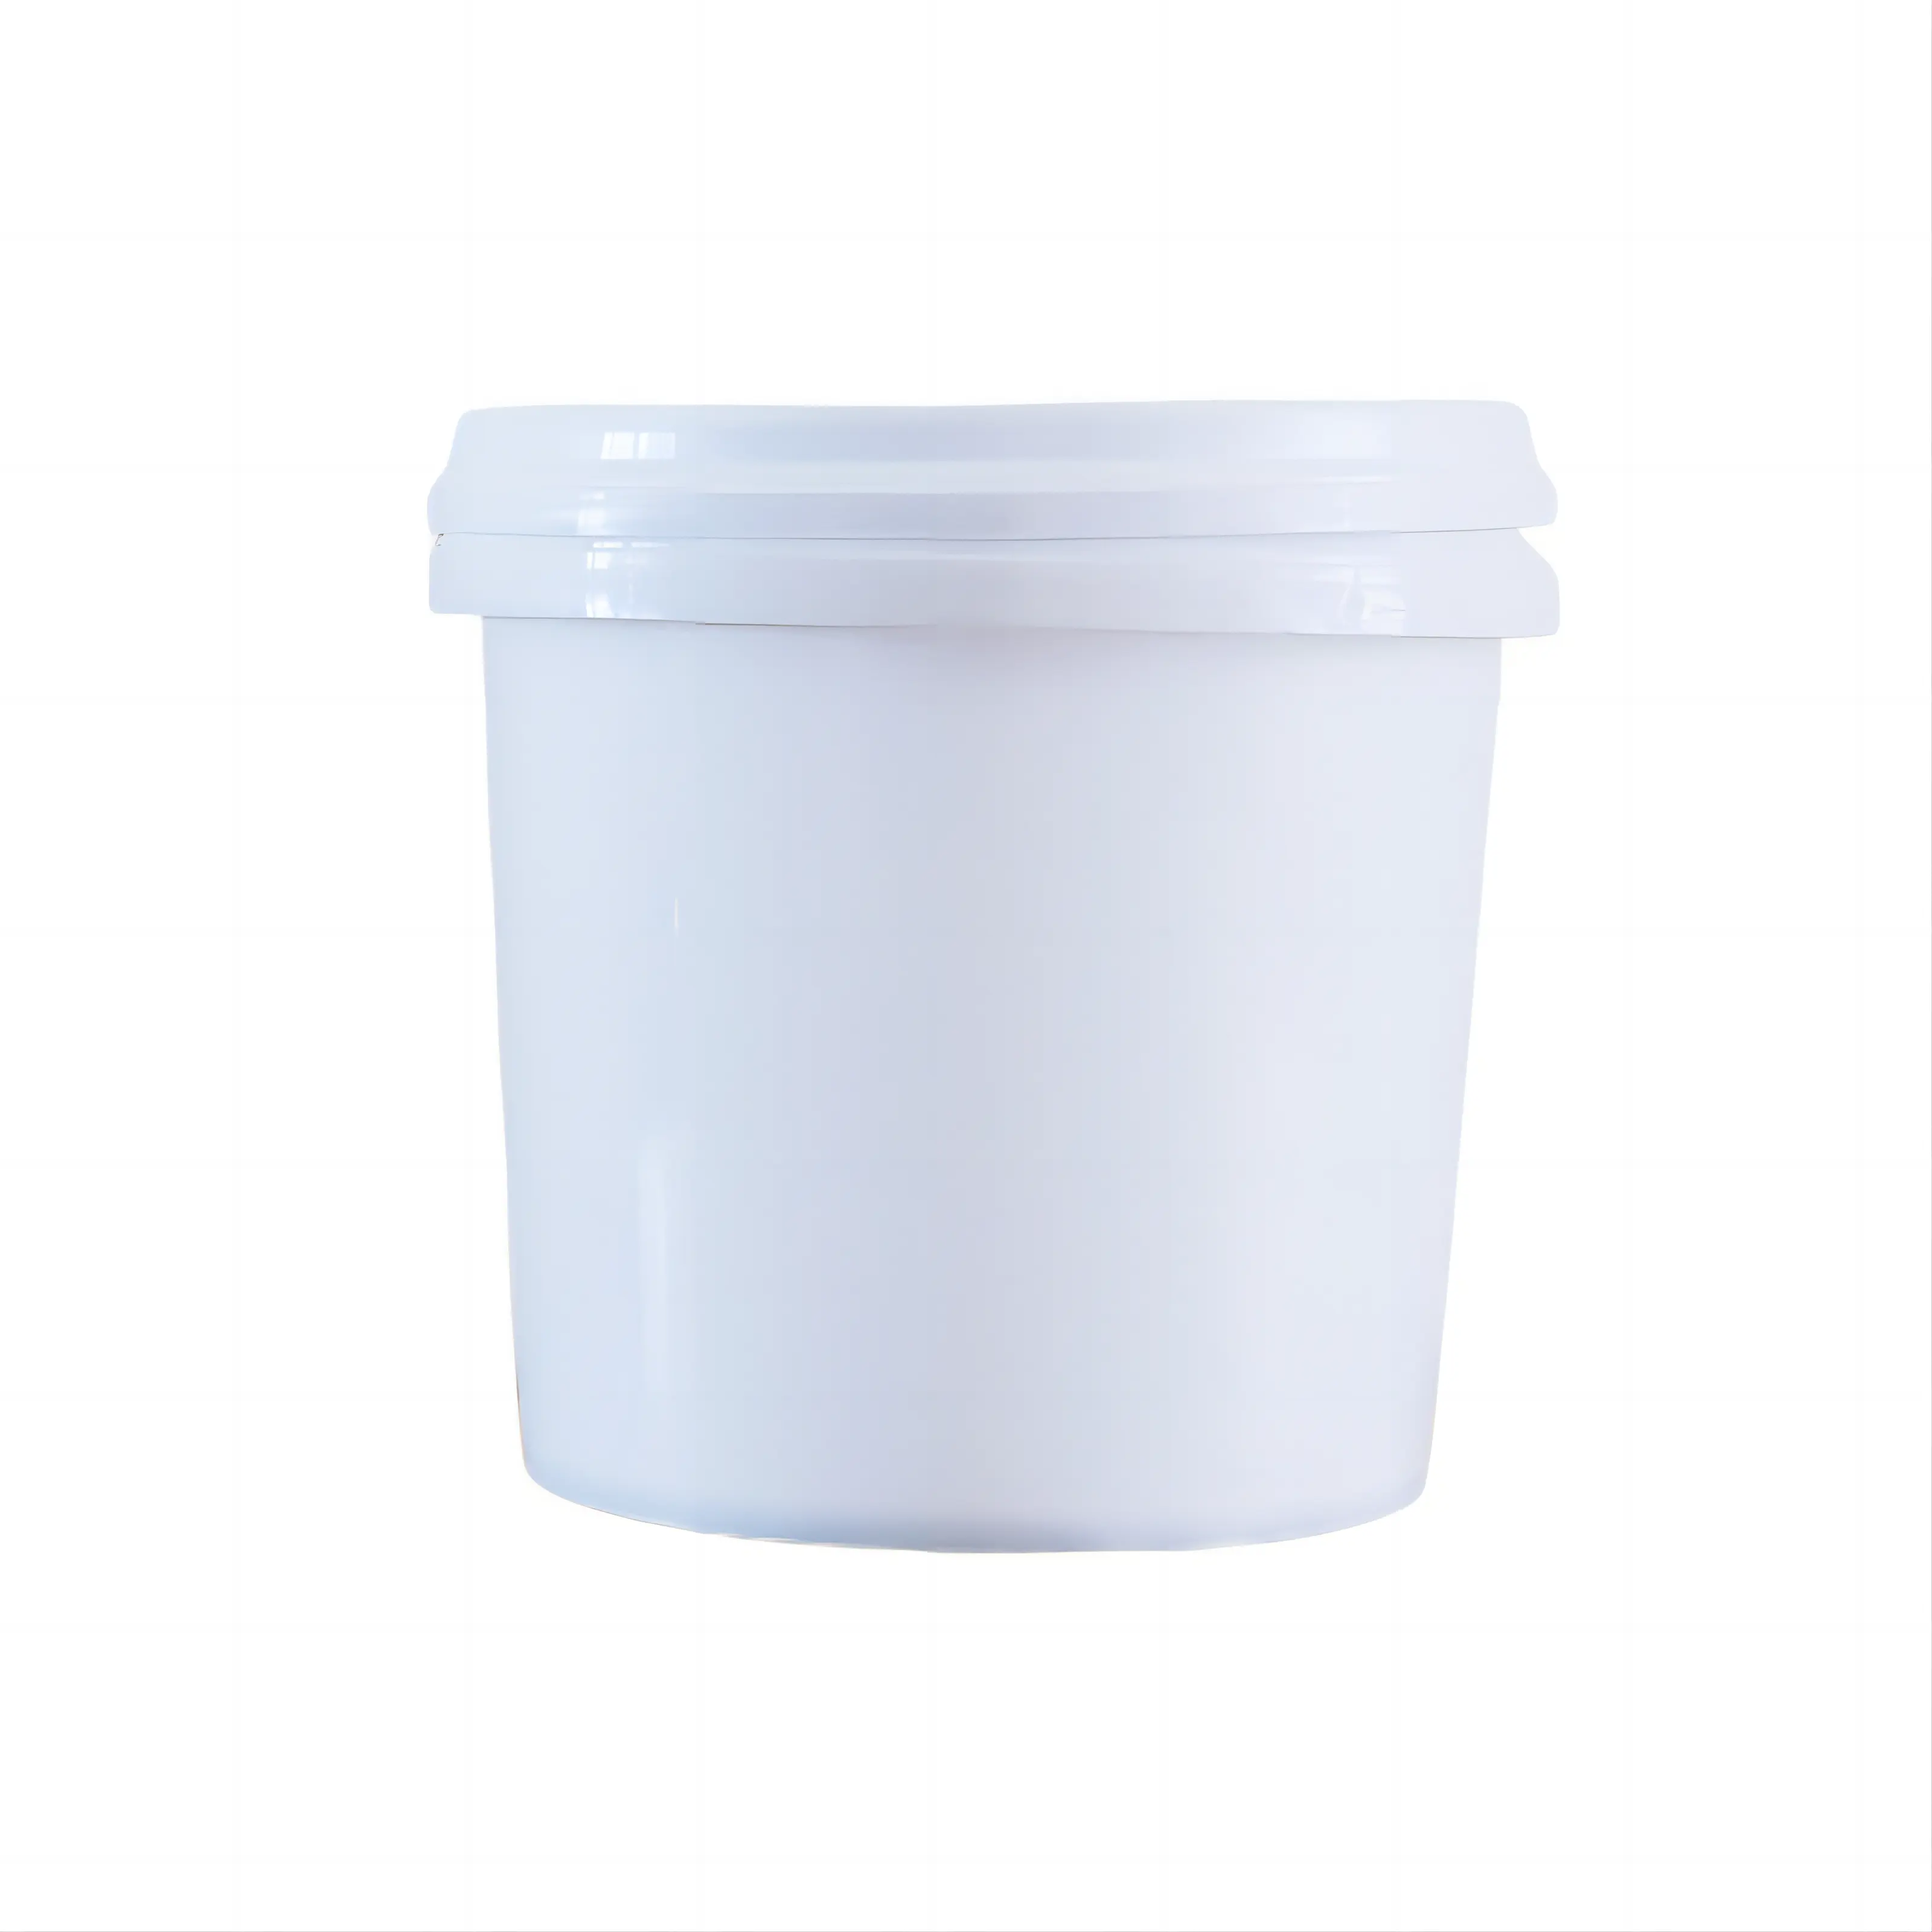 Ember es krim dengan tutup, ember plastik 1L grosir ember putih bahan makanan kelas pp